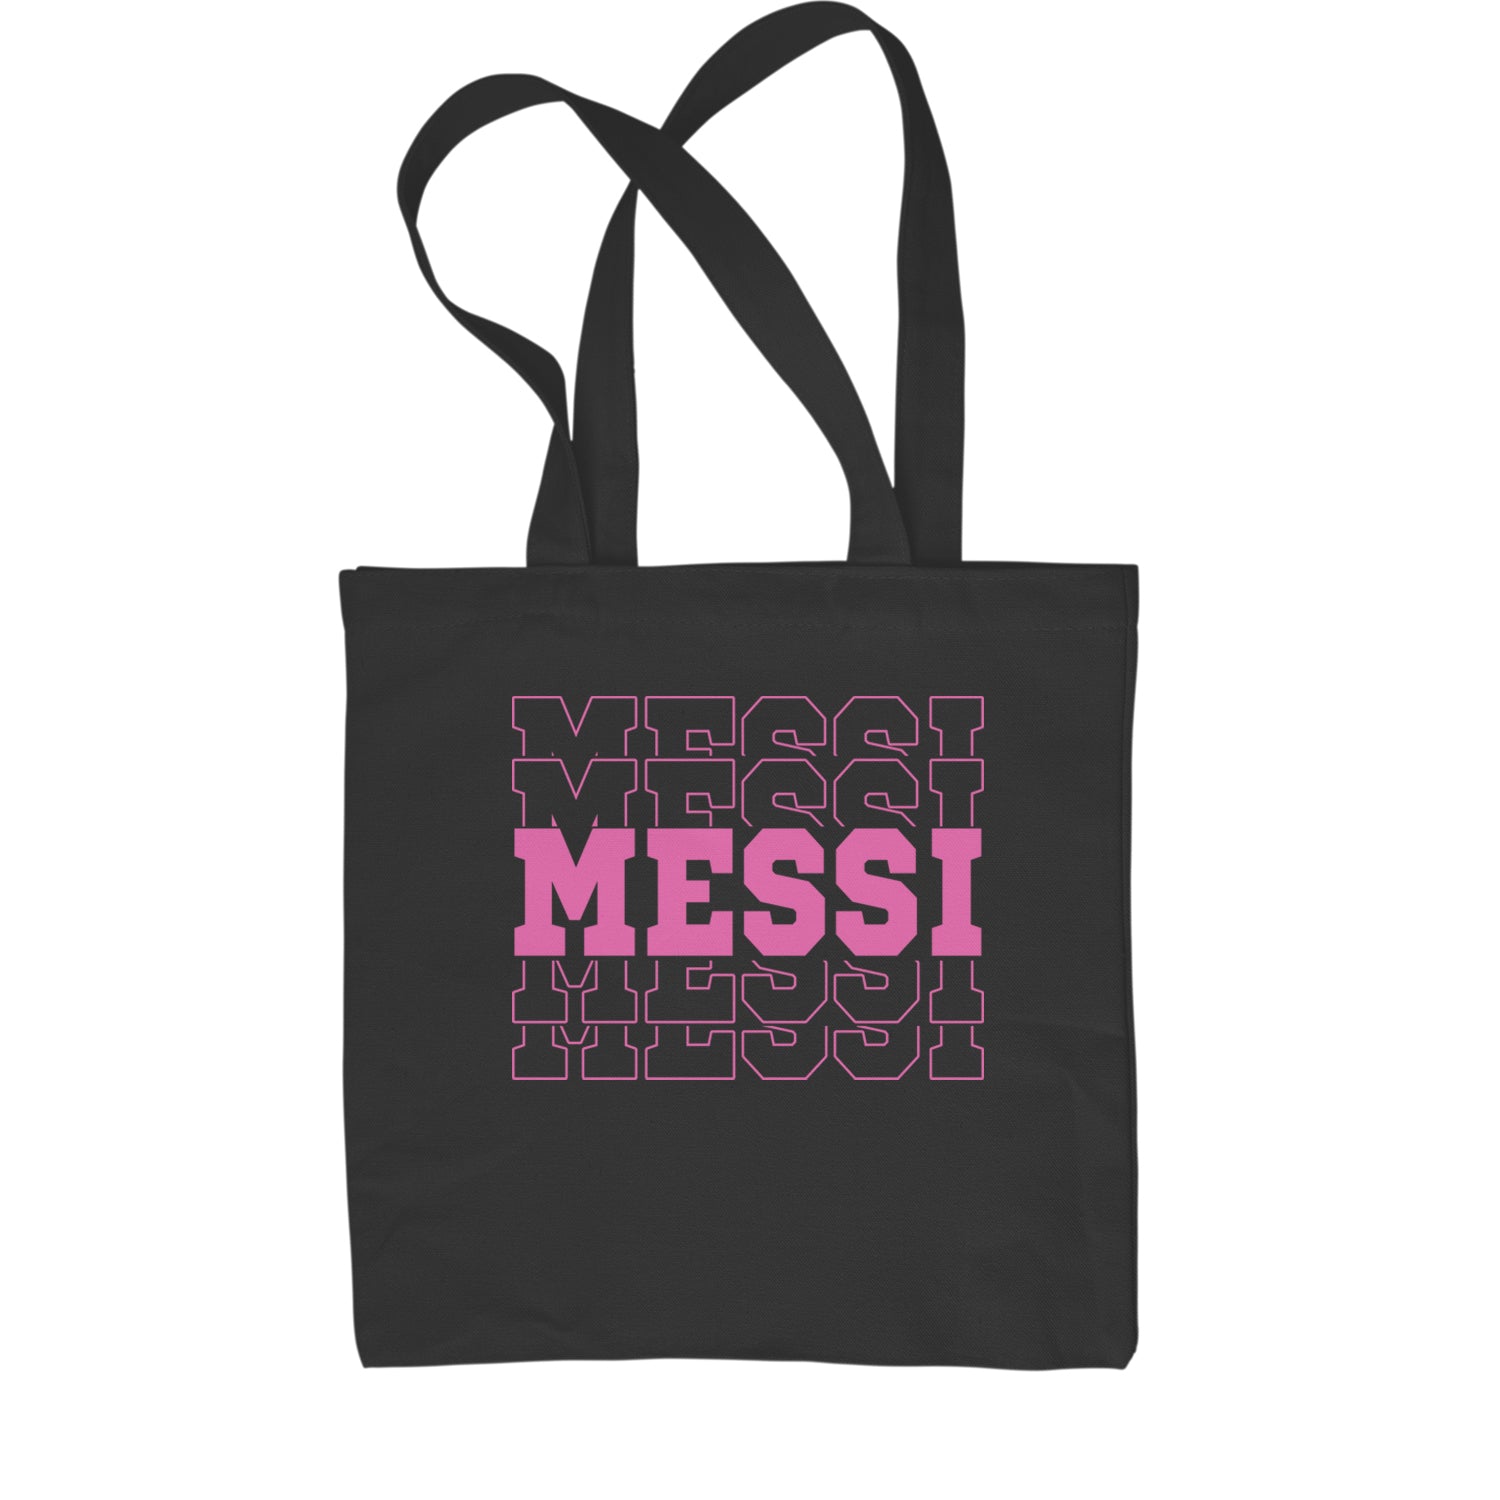 Messi Miami Futbol Shopping Tote Bag